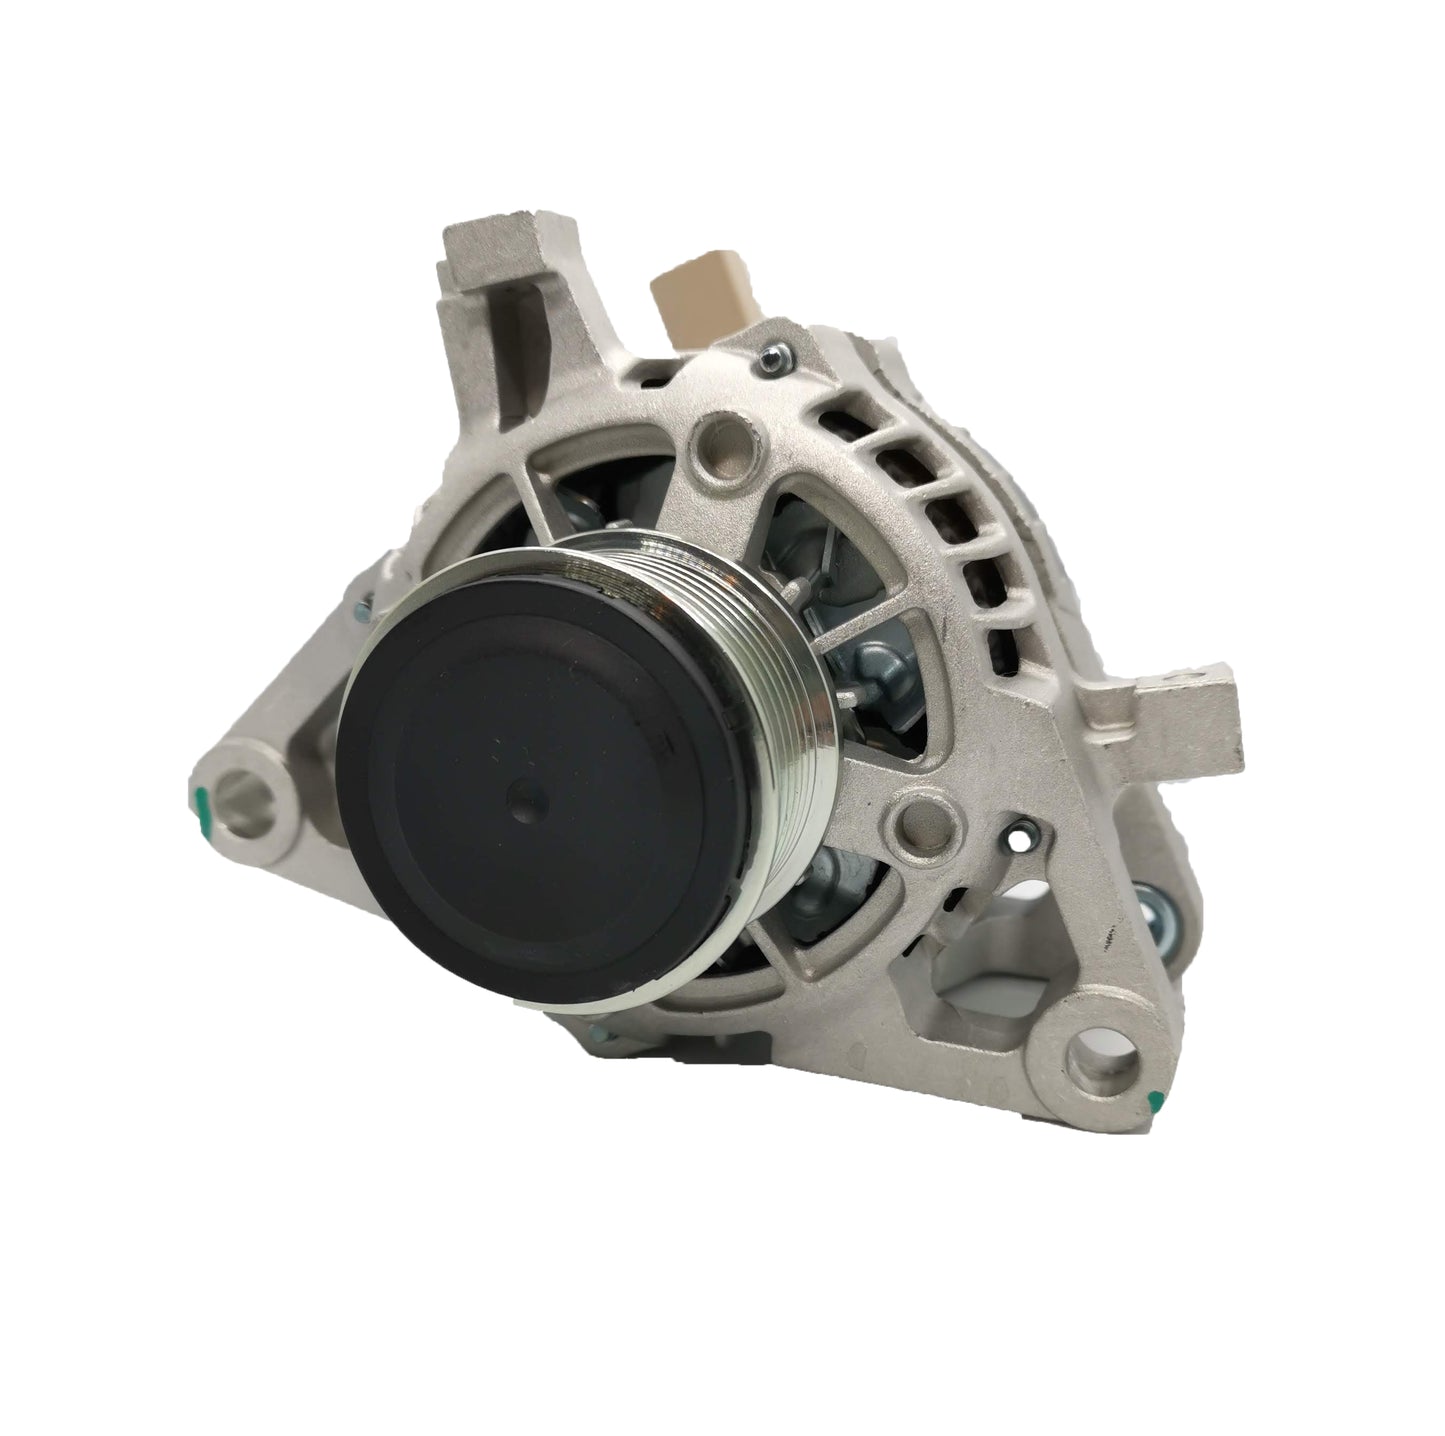 New Alternator for Toyota Hilux Turbo Diesel 2.8L GUN126R 1GD-FTV 2GD 2015-Now